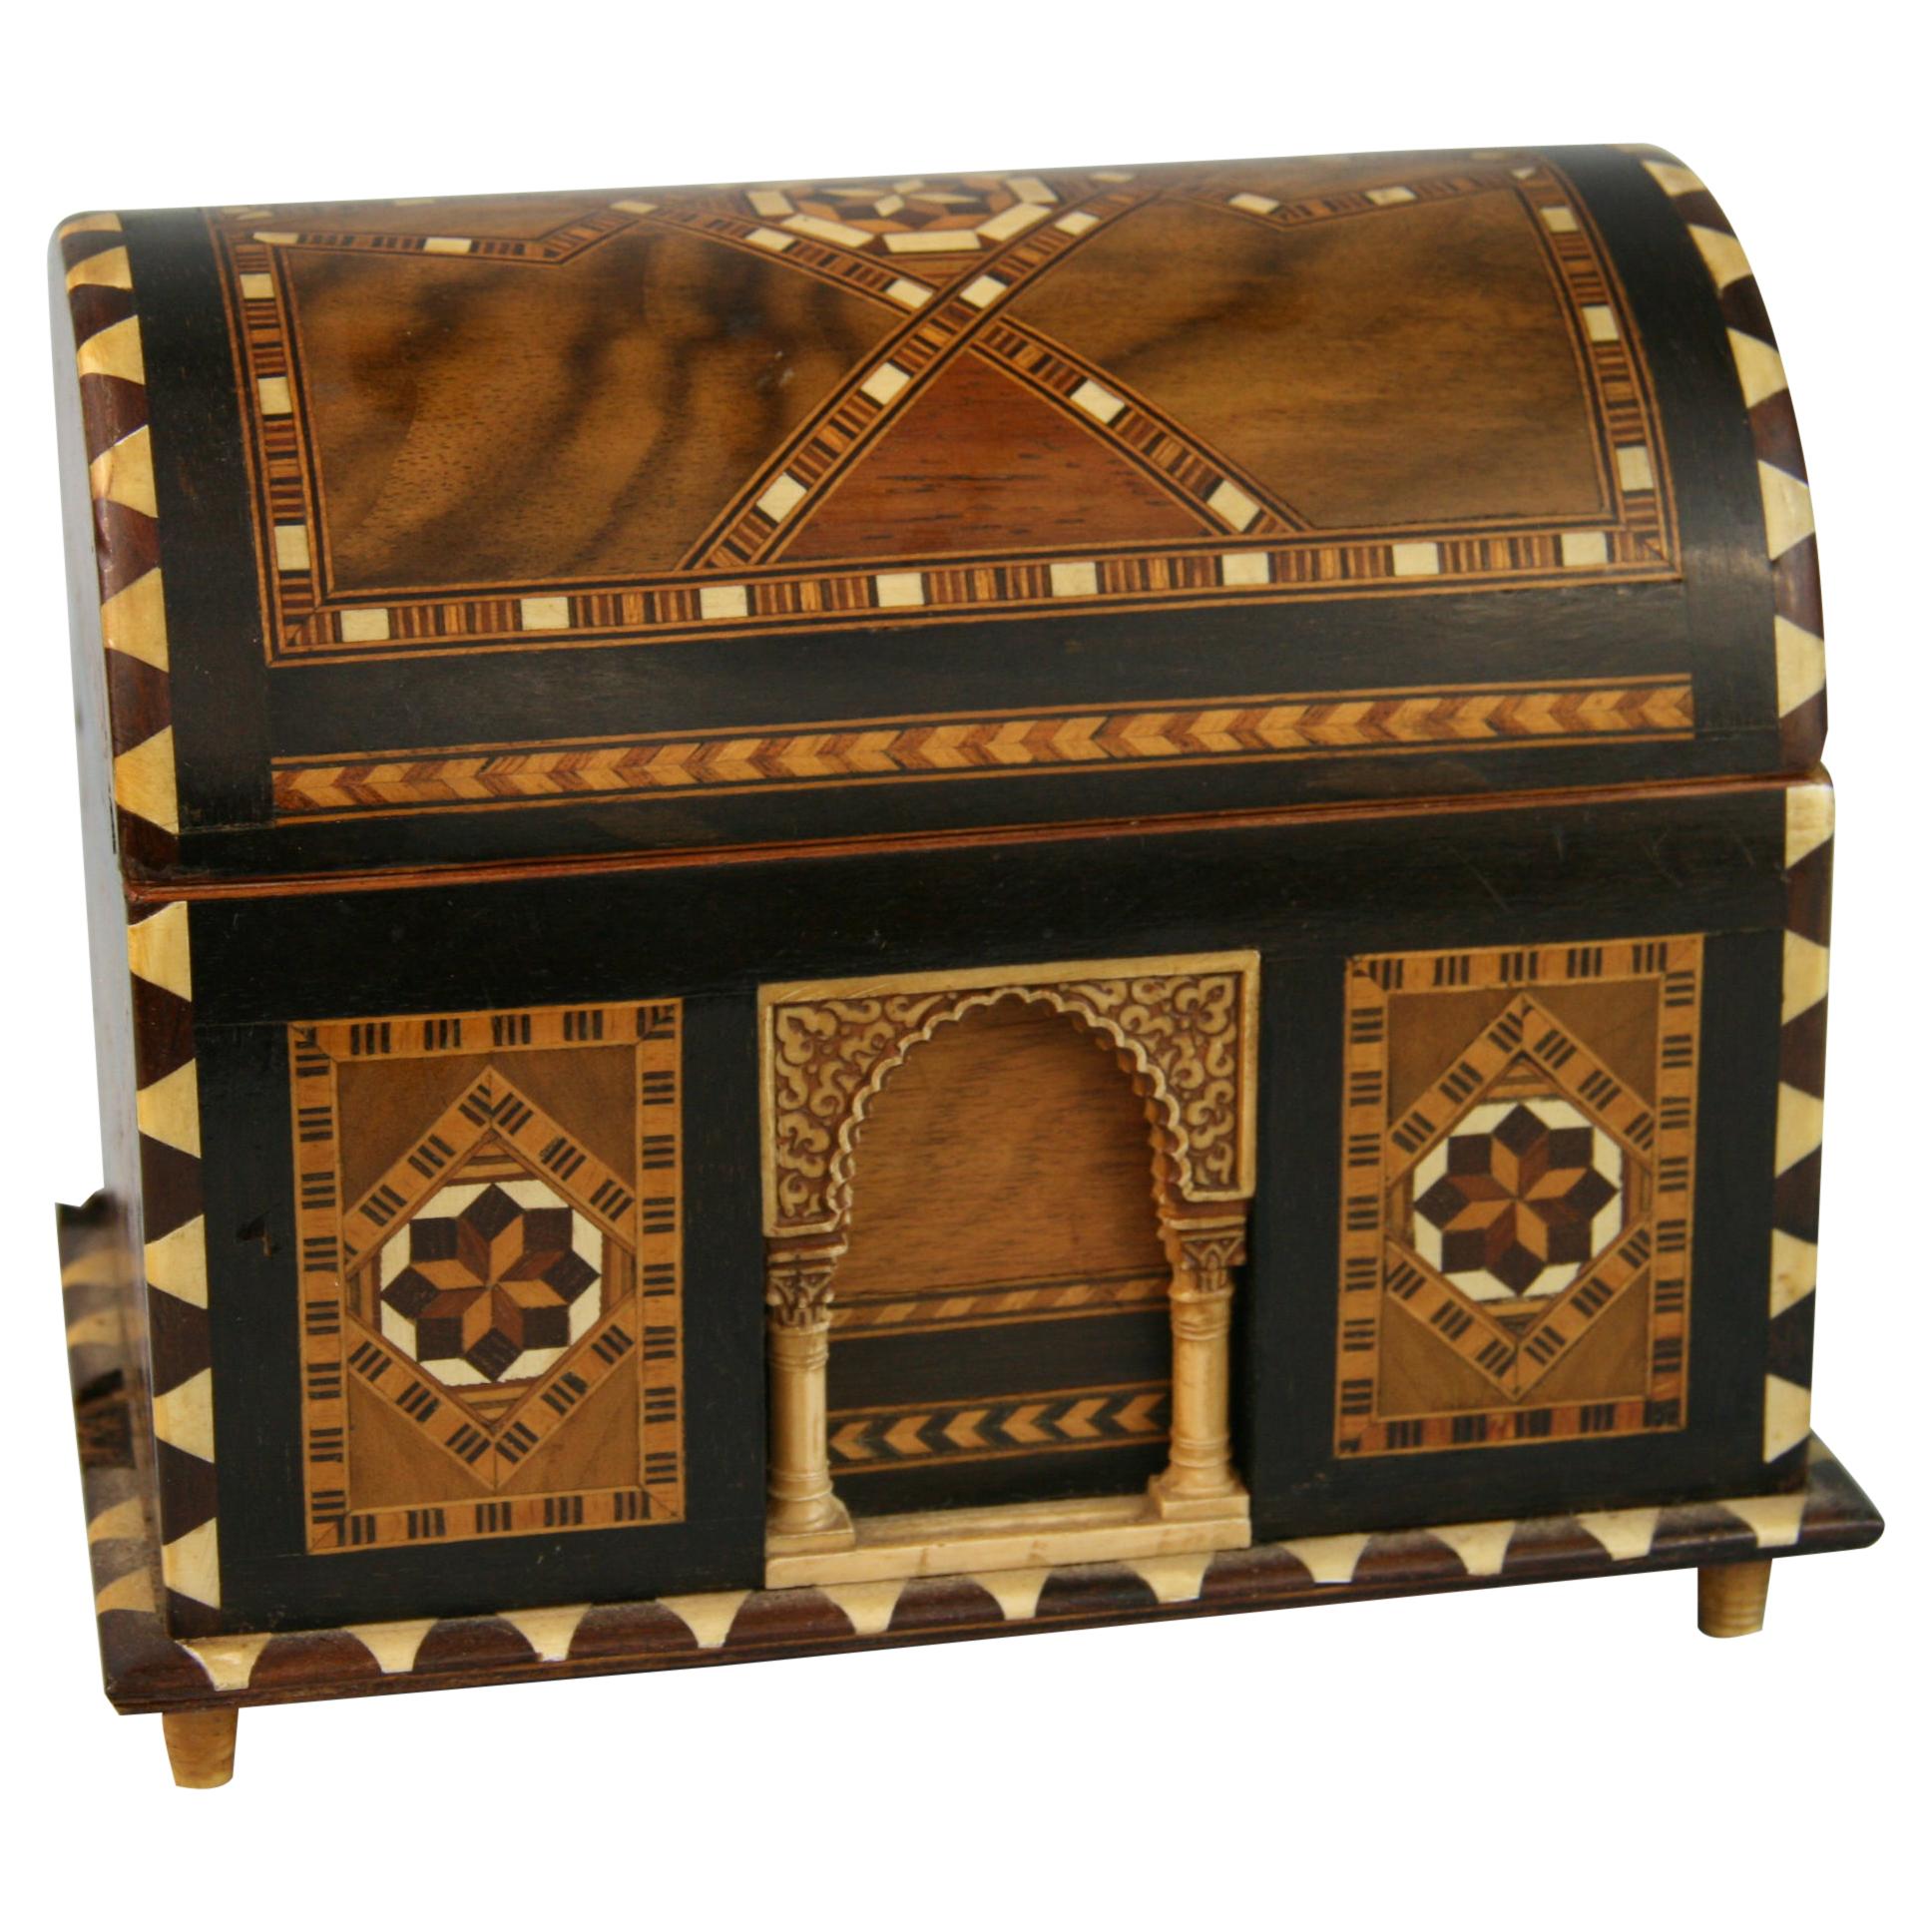 Schachtel mit Bogenplatte und Intarsien aus Holz